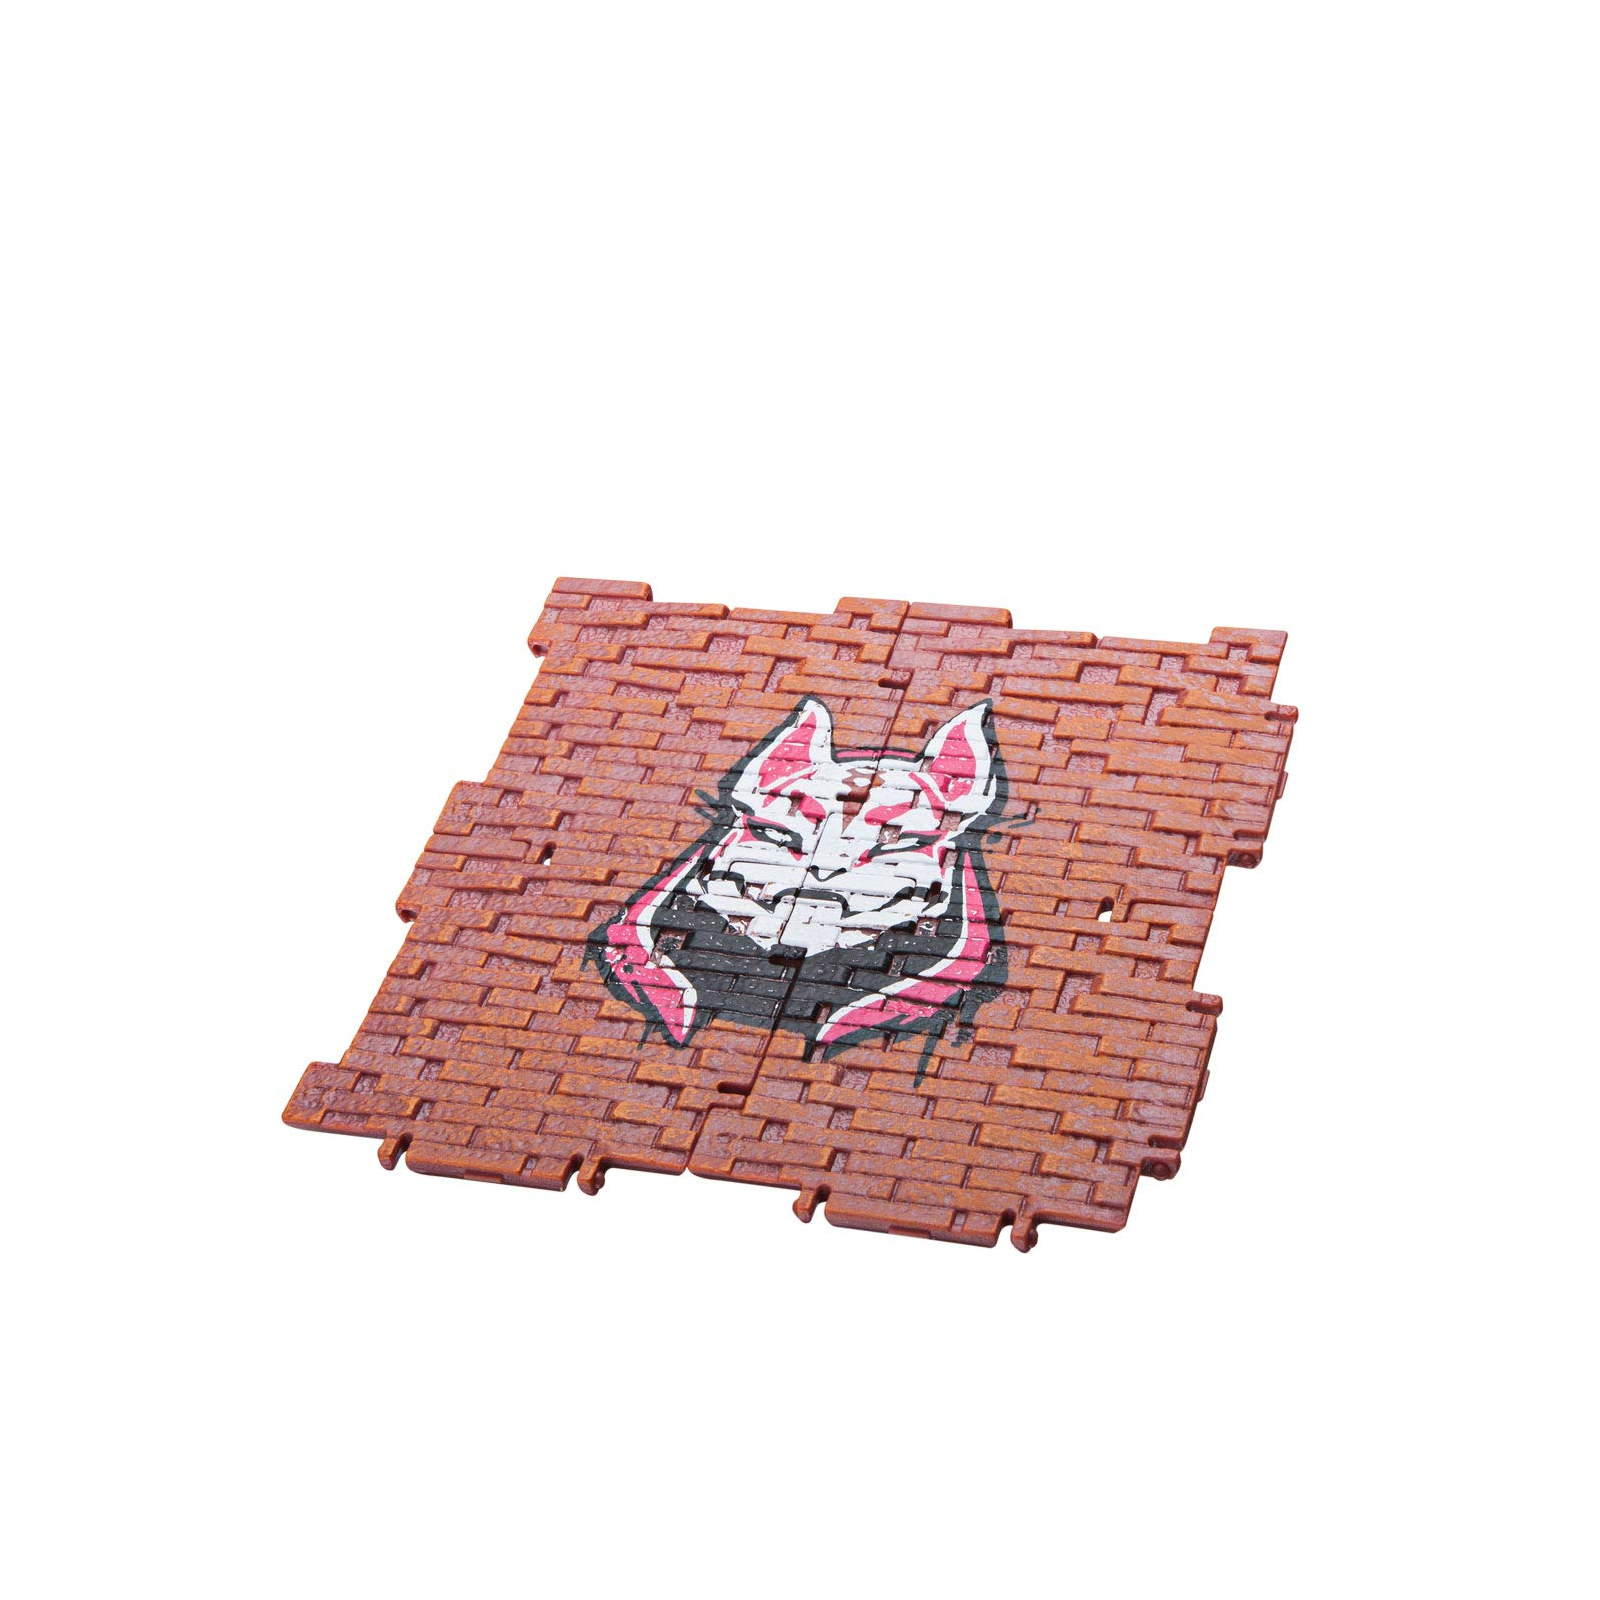 Фігурка для геймерів Jazwares Fortnite Llama Pinata набор аксессуаров (FNT0009) зображення 5